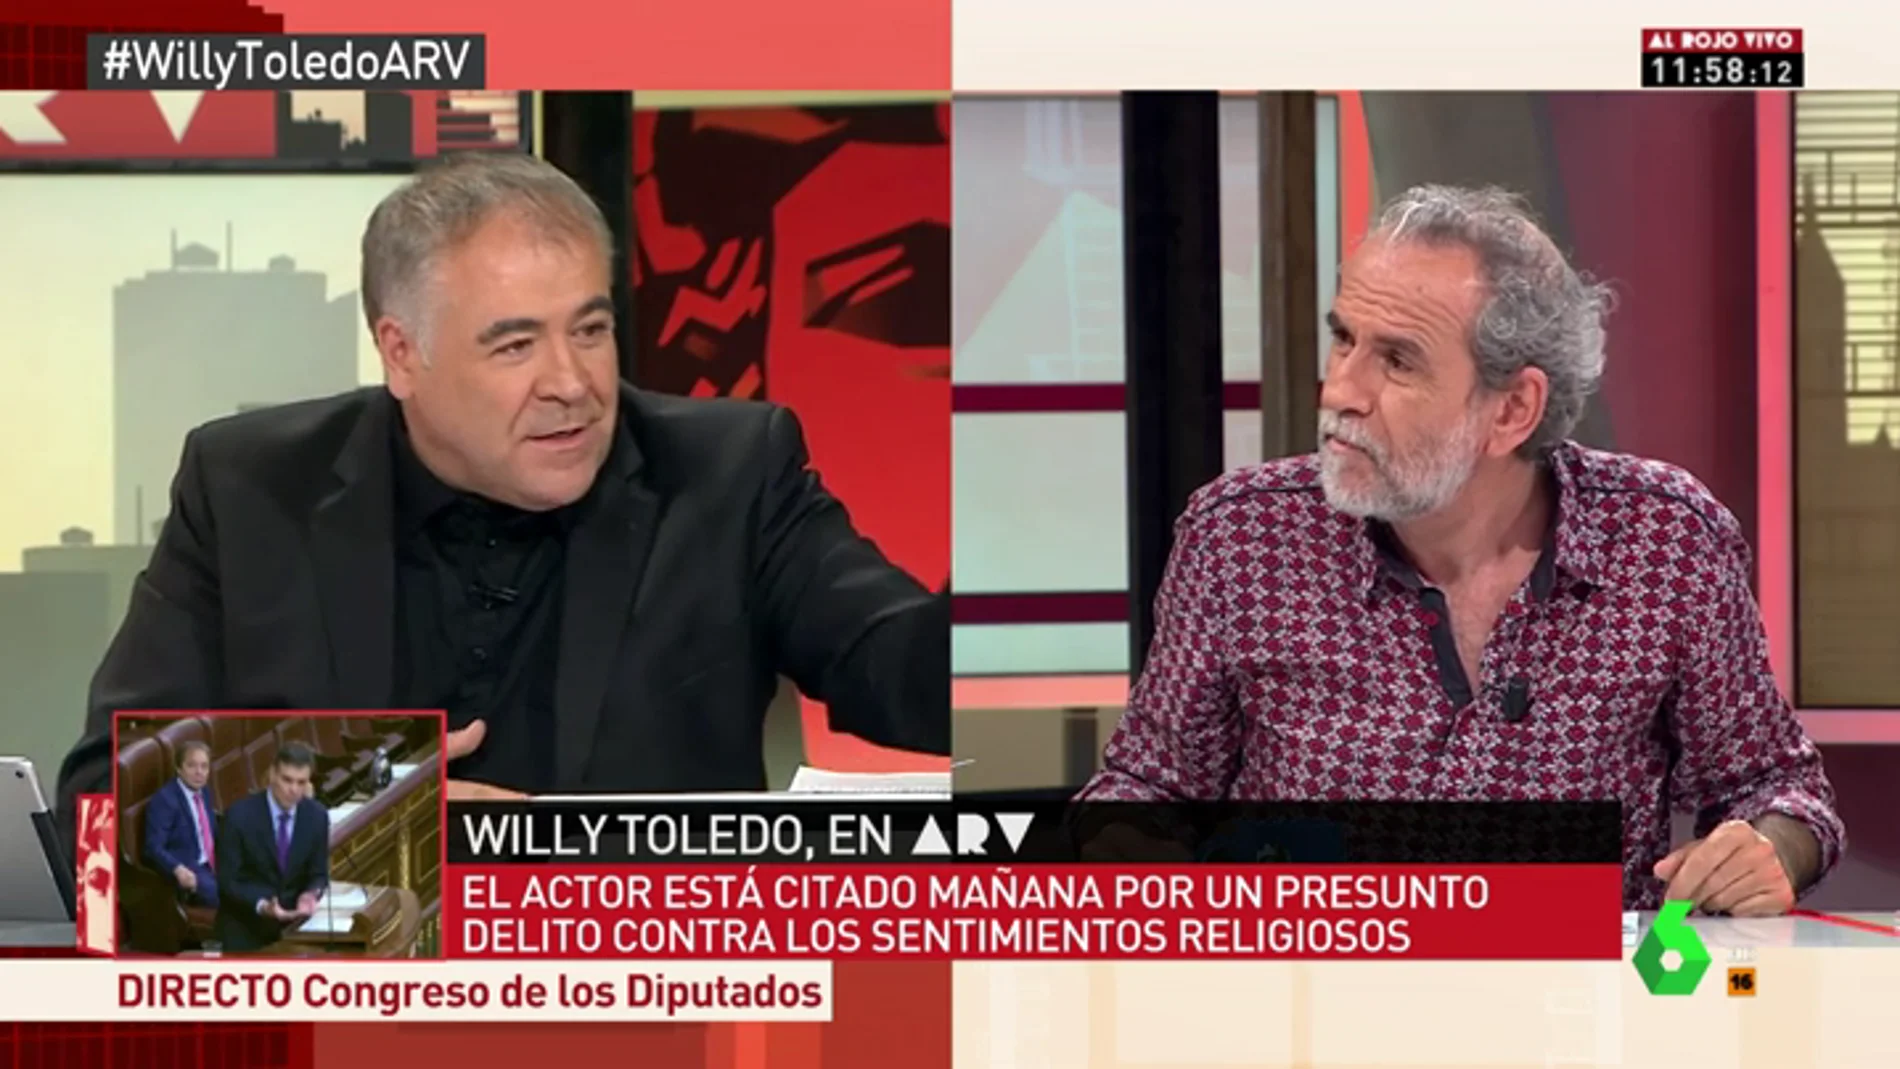 El mensaje de Willy Toledo a la Asociación de Abogados Cristianos: "Las vírgenes también tienen coño"